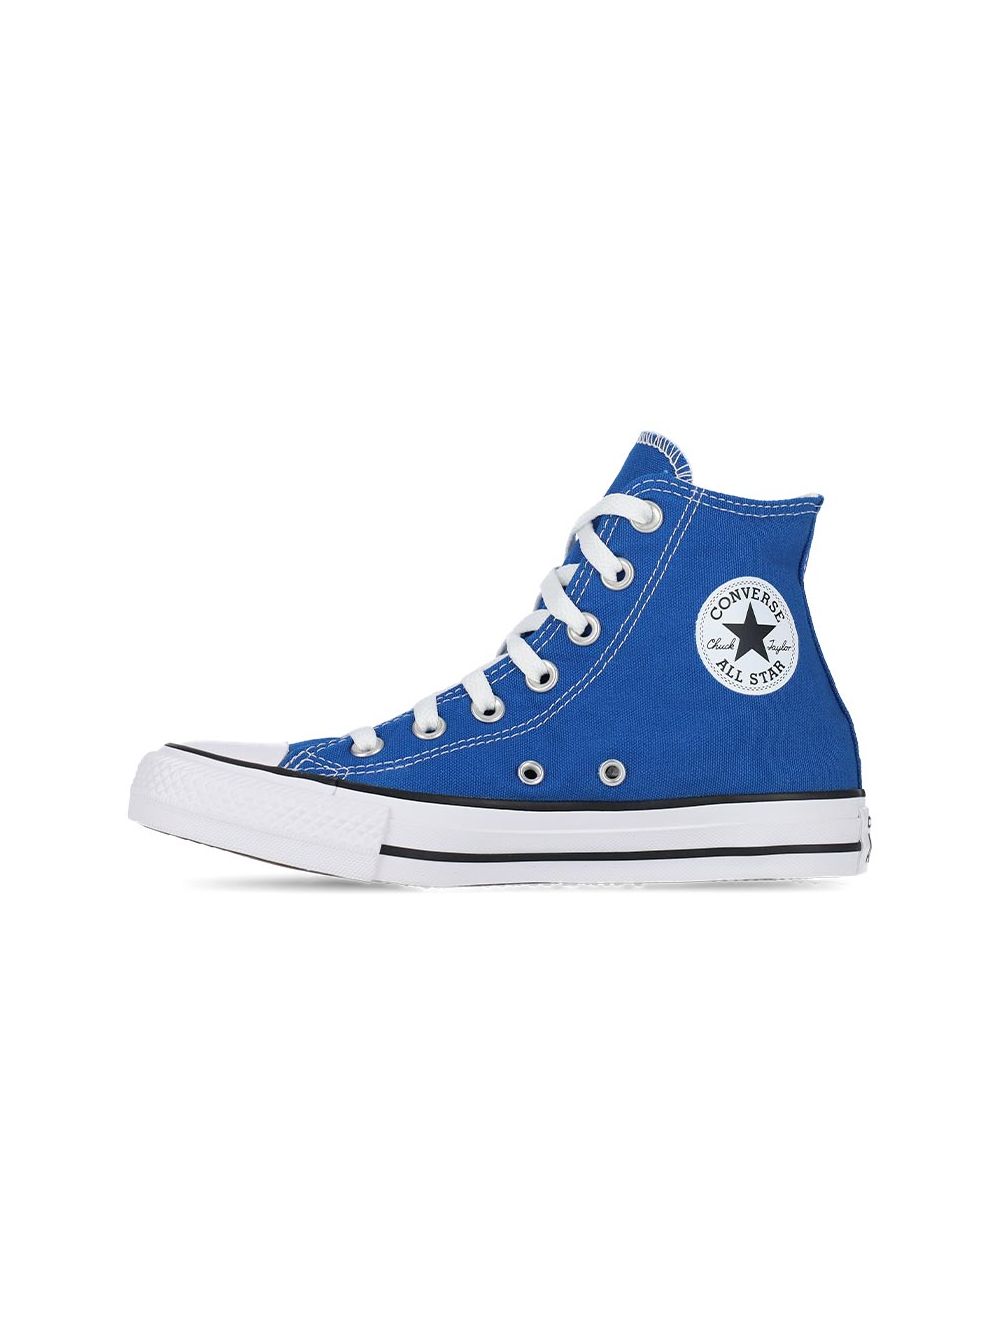 Shop Converse Chuck Taylor All Star Hi Mens Sneaker Snorkel Blue